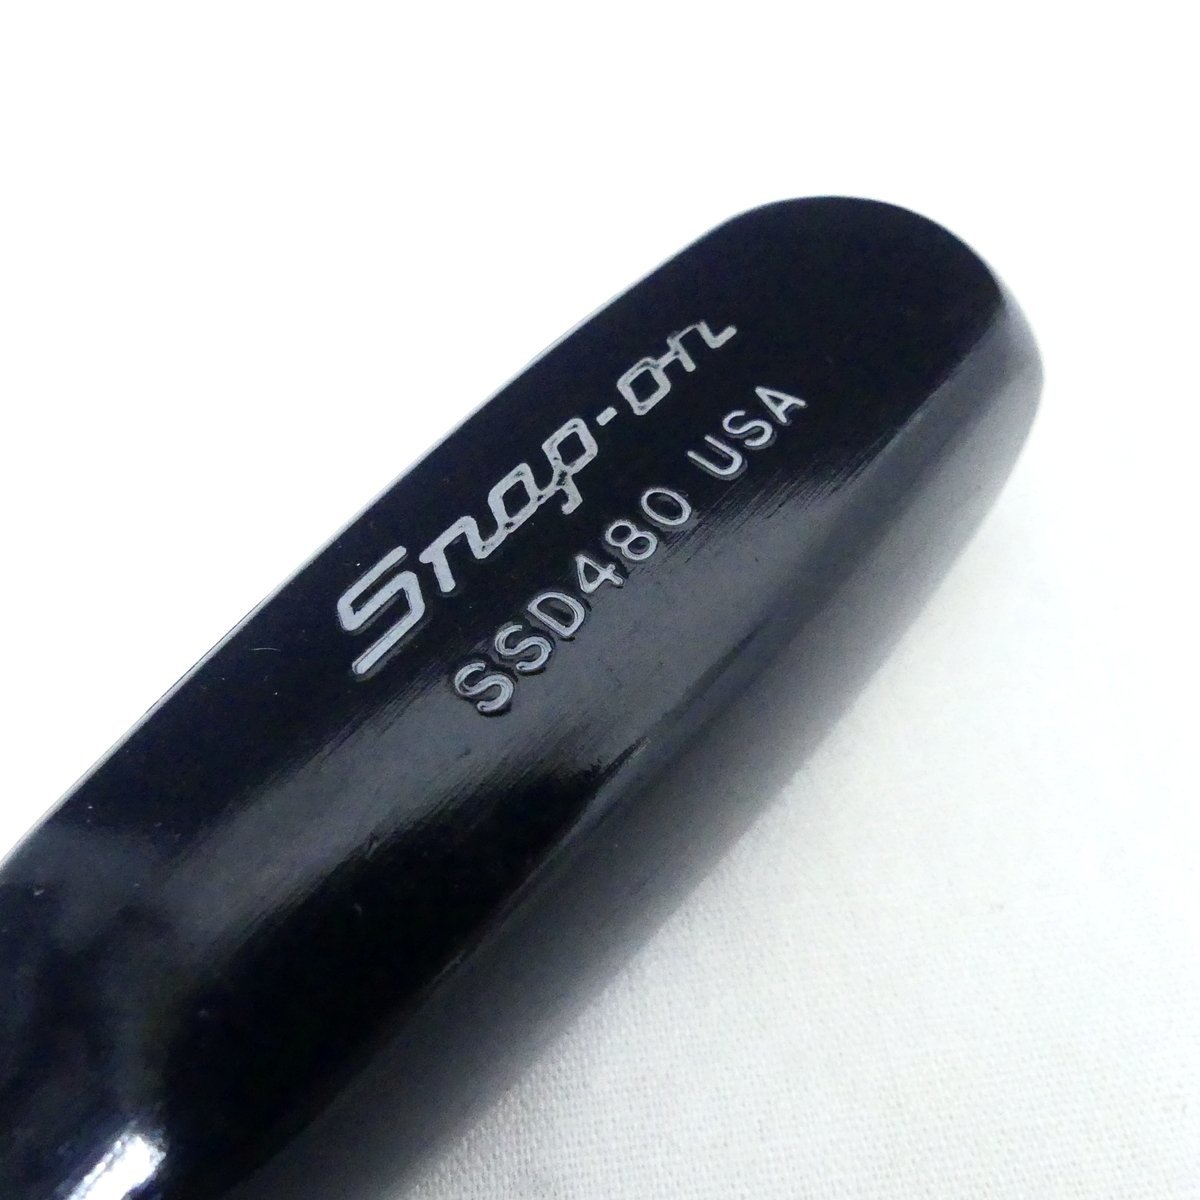 Snap-on スナップオン SSD480 マイナスドライバー ロング 黒グリップ 旧グリップ ハンドツール 超美品 /2311C_画像3